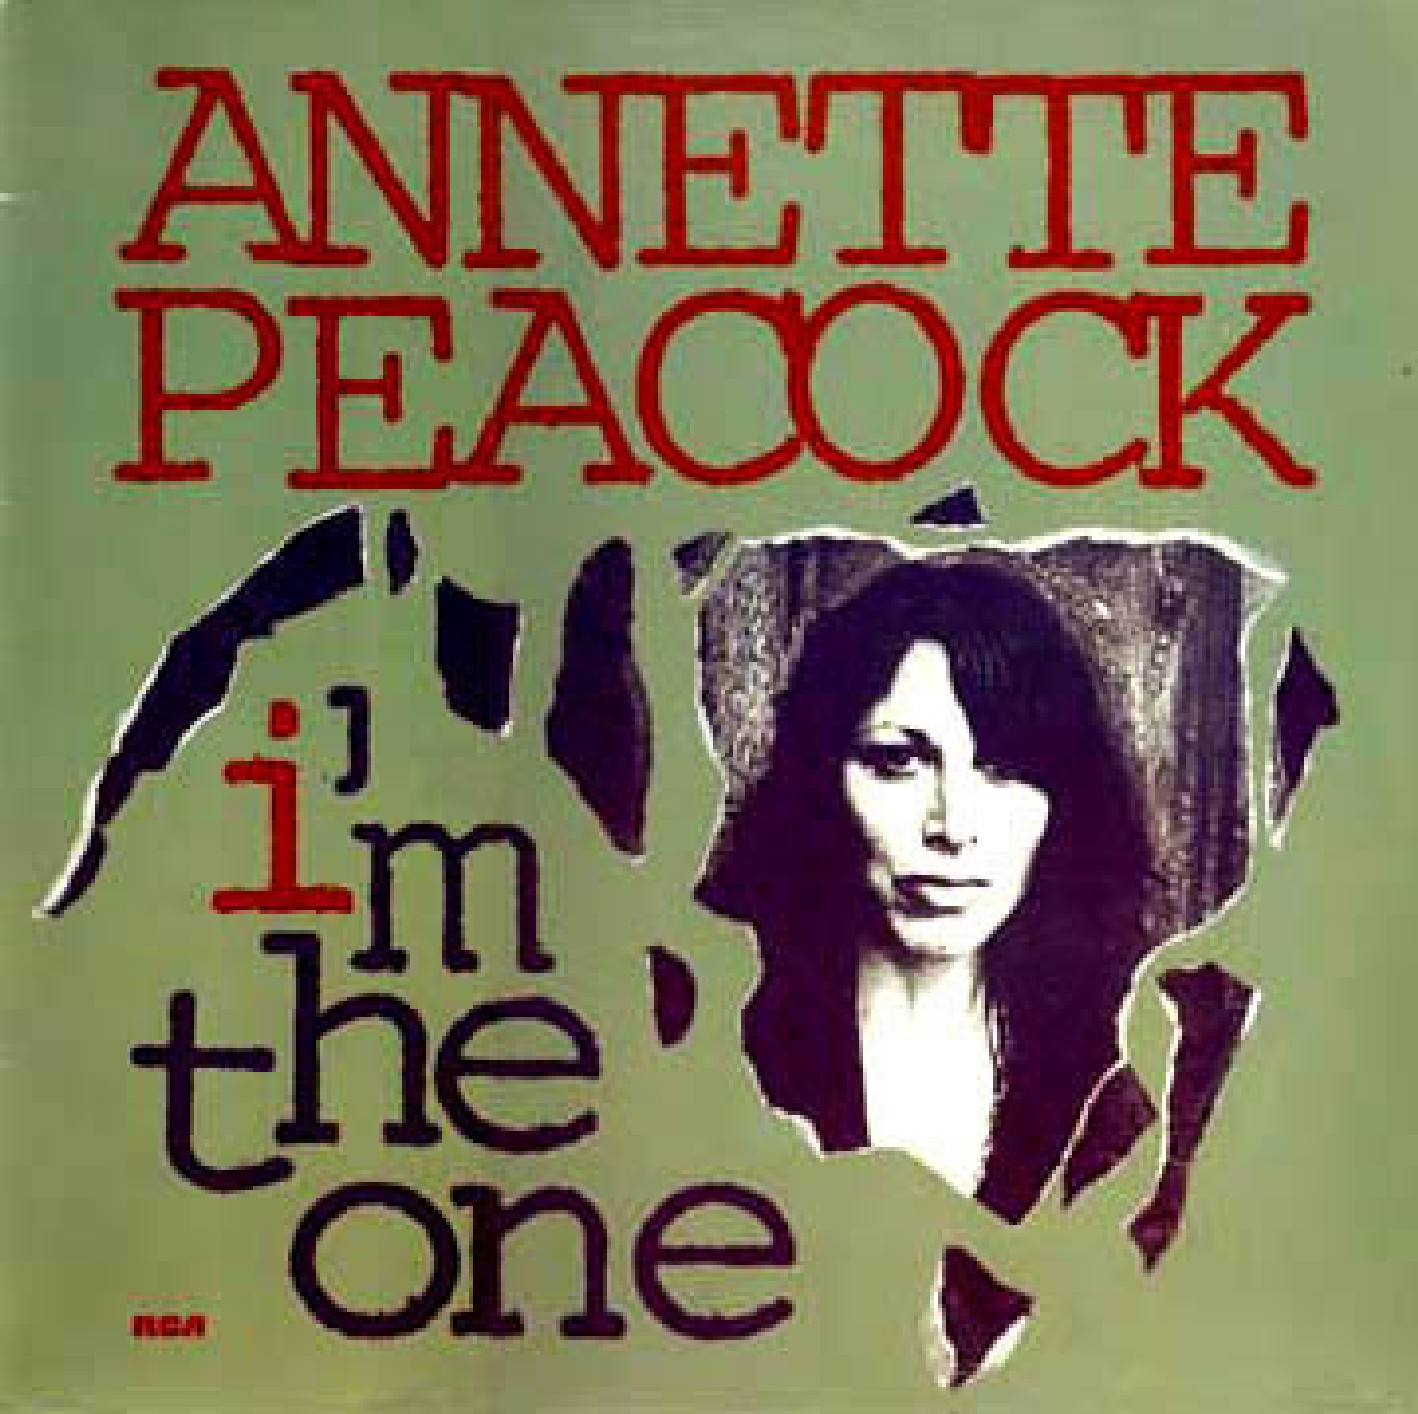 [Annette+Peacock-I]